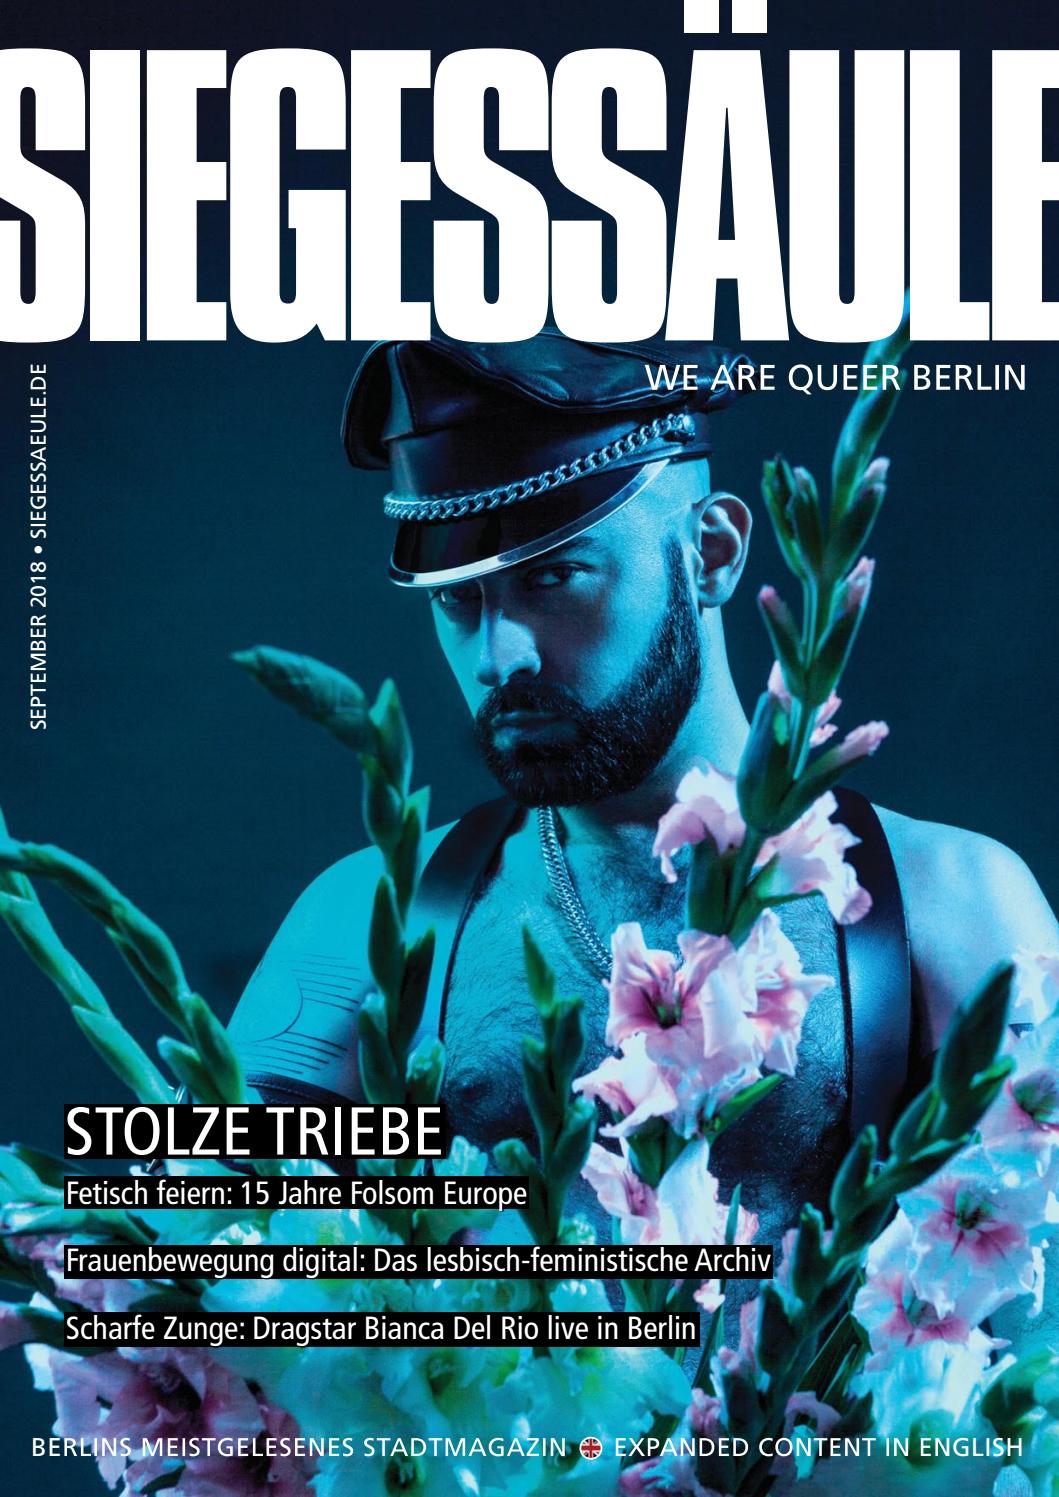 Vintage Garten Gestalten Inspirierend Siegessule September 2018 Berlin S Queer Magazine by